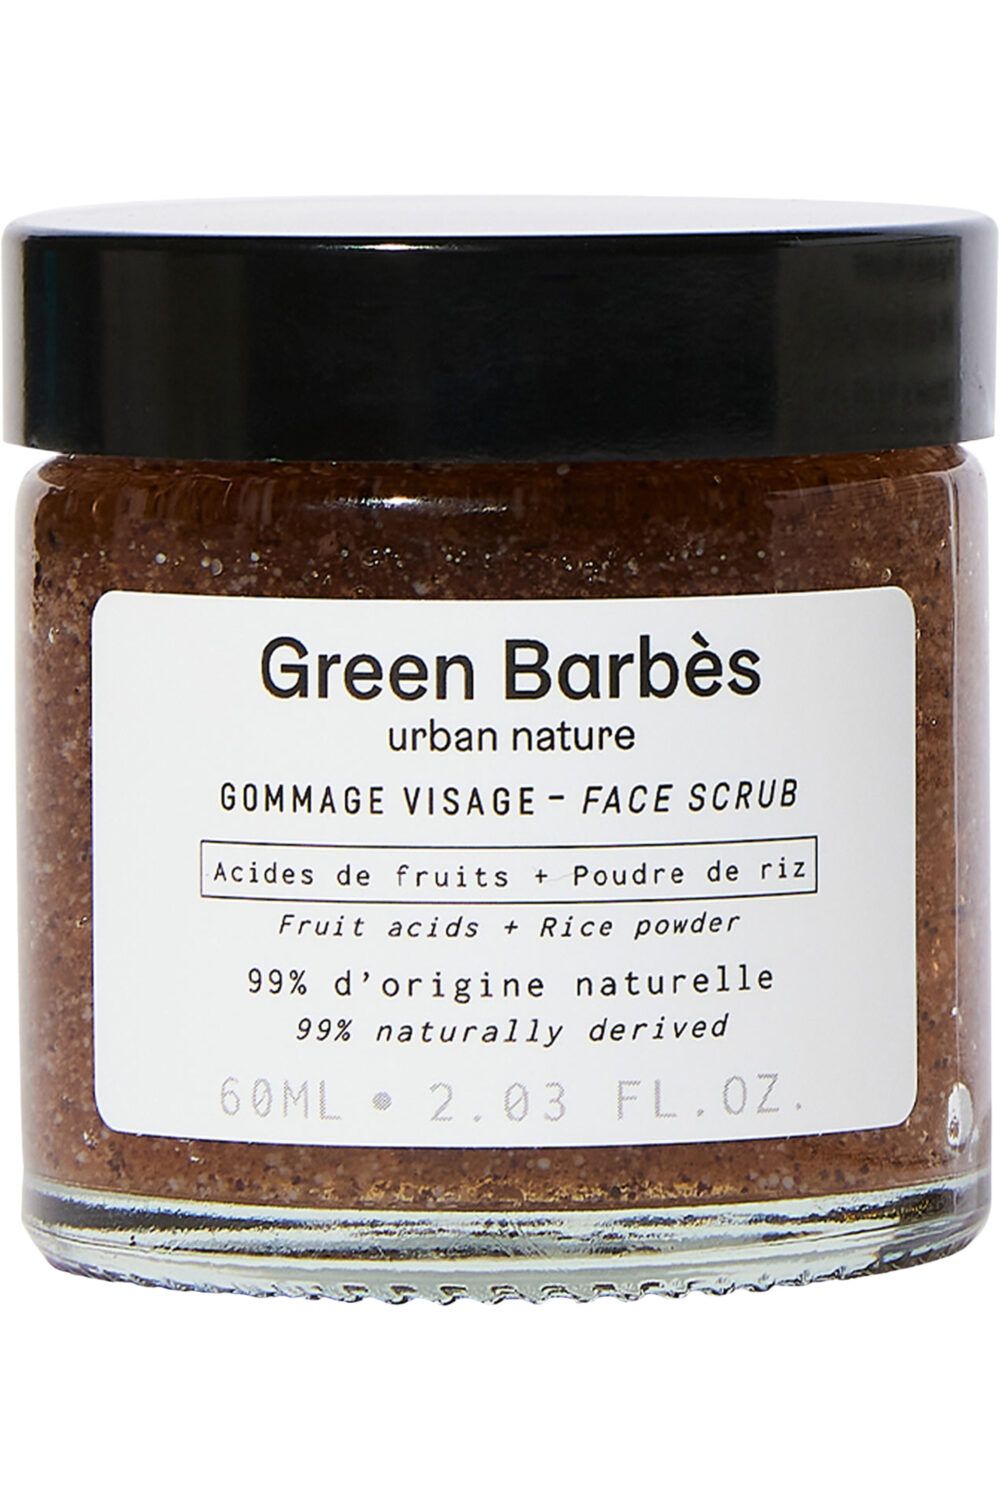 Green Barbès - Gommage visage 60 ml